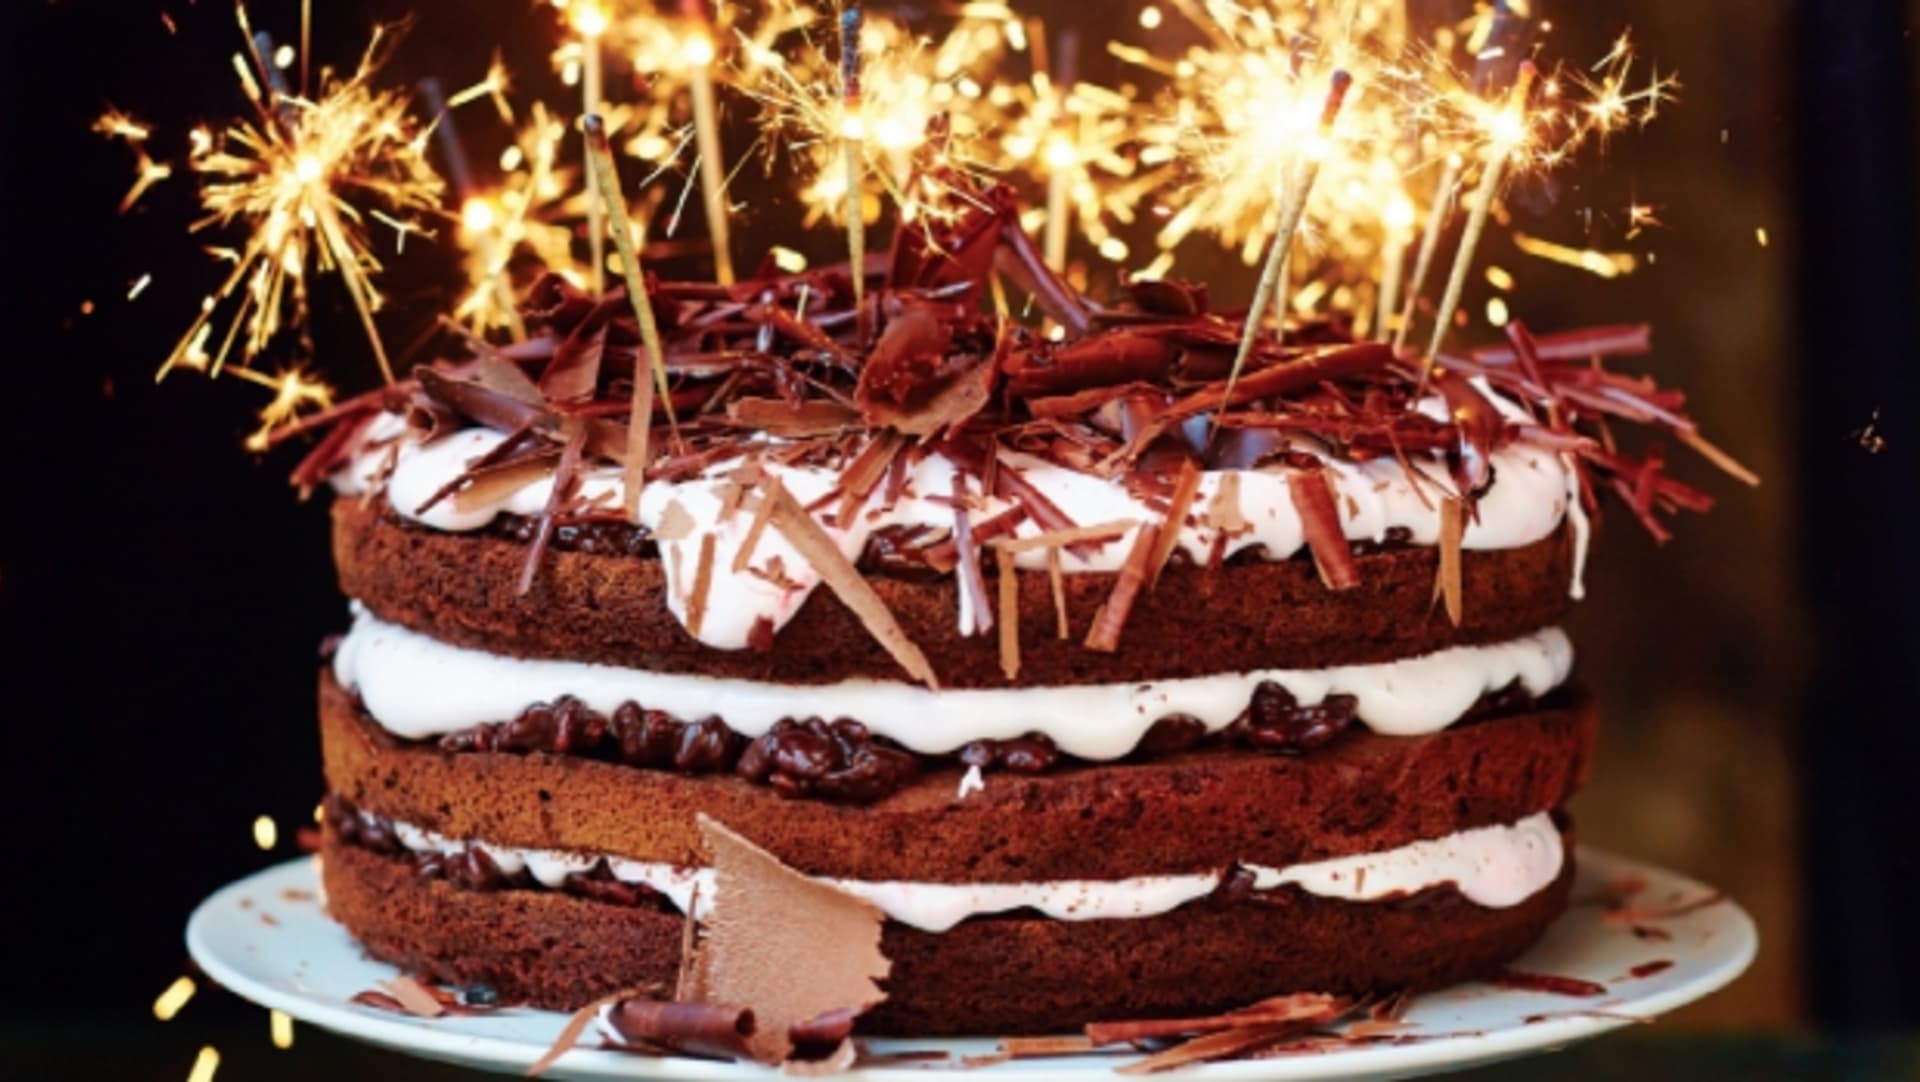 Slavnostní čokoládový dort podle Jamieho Olivera